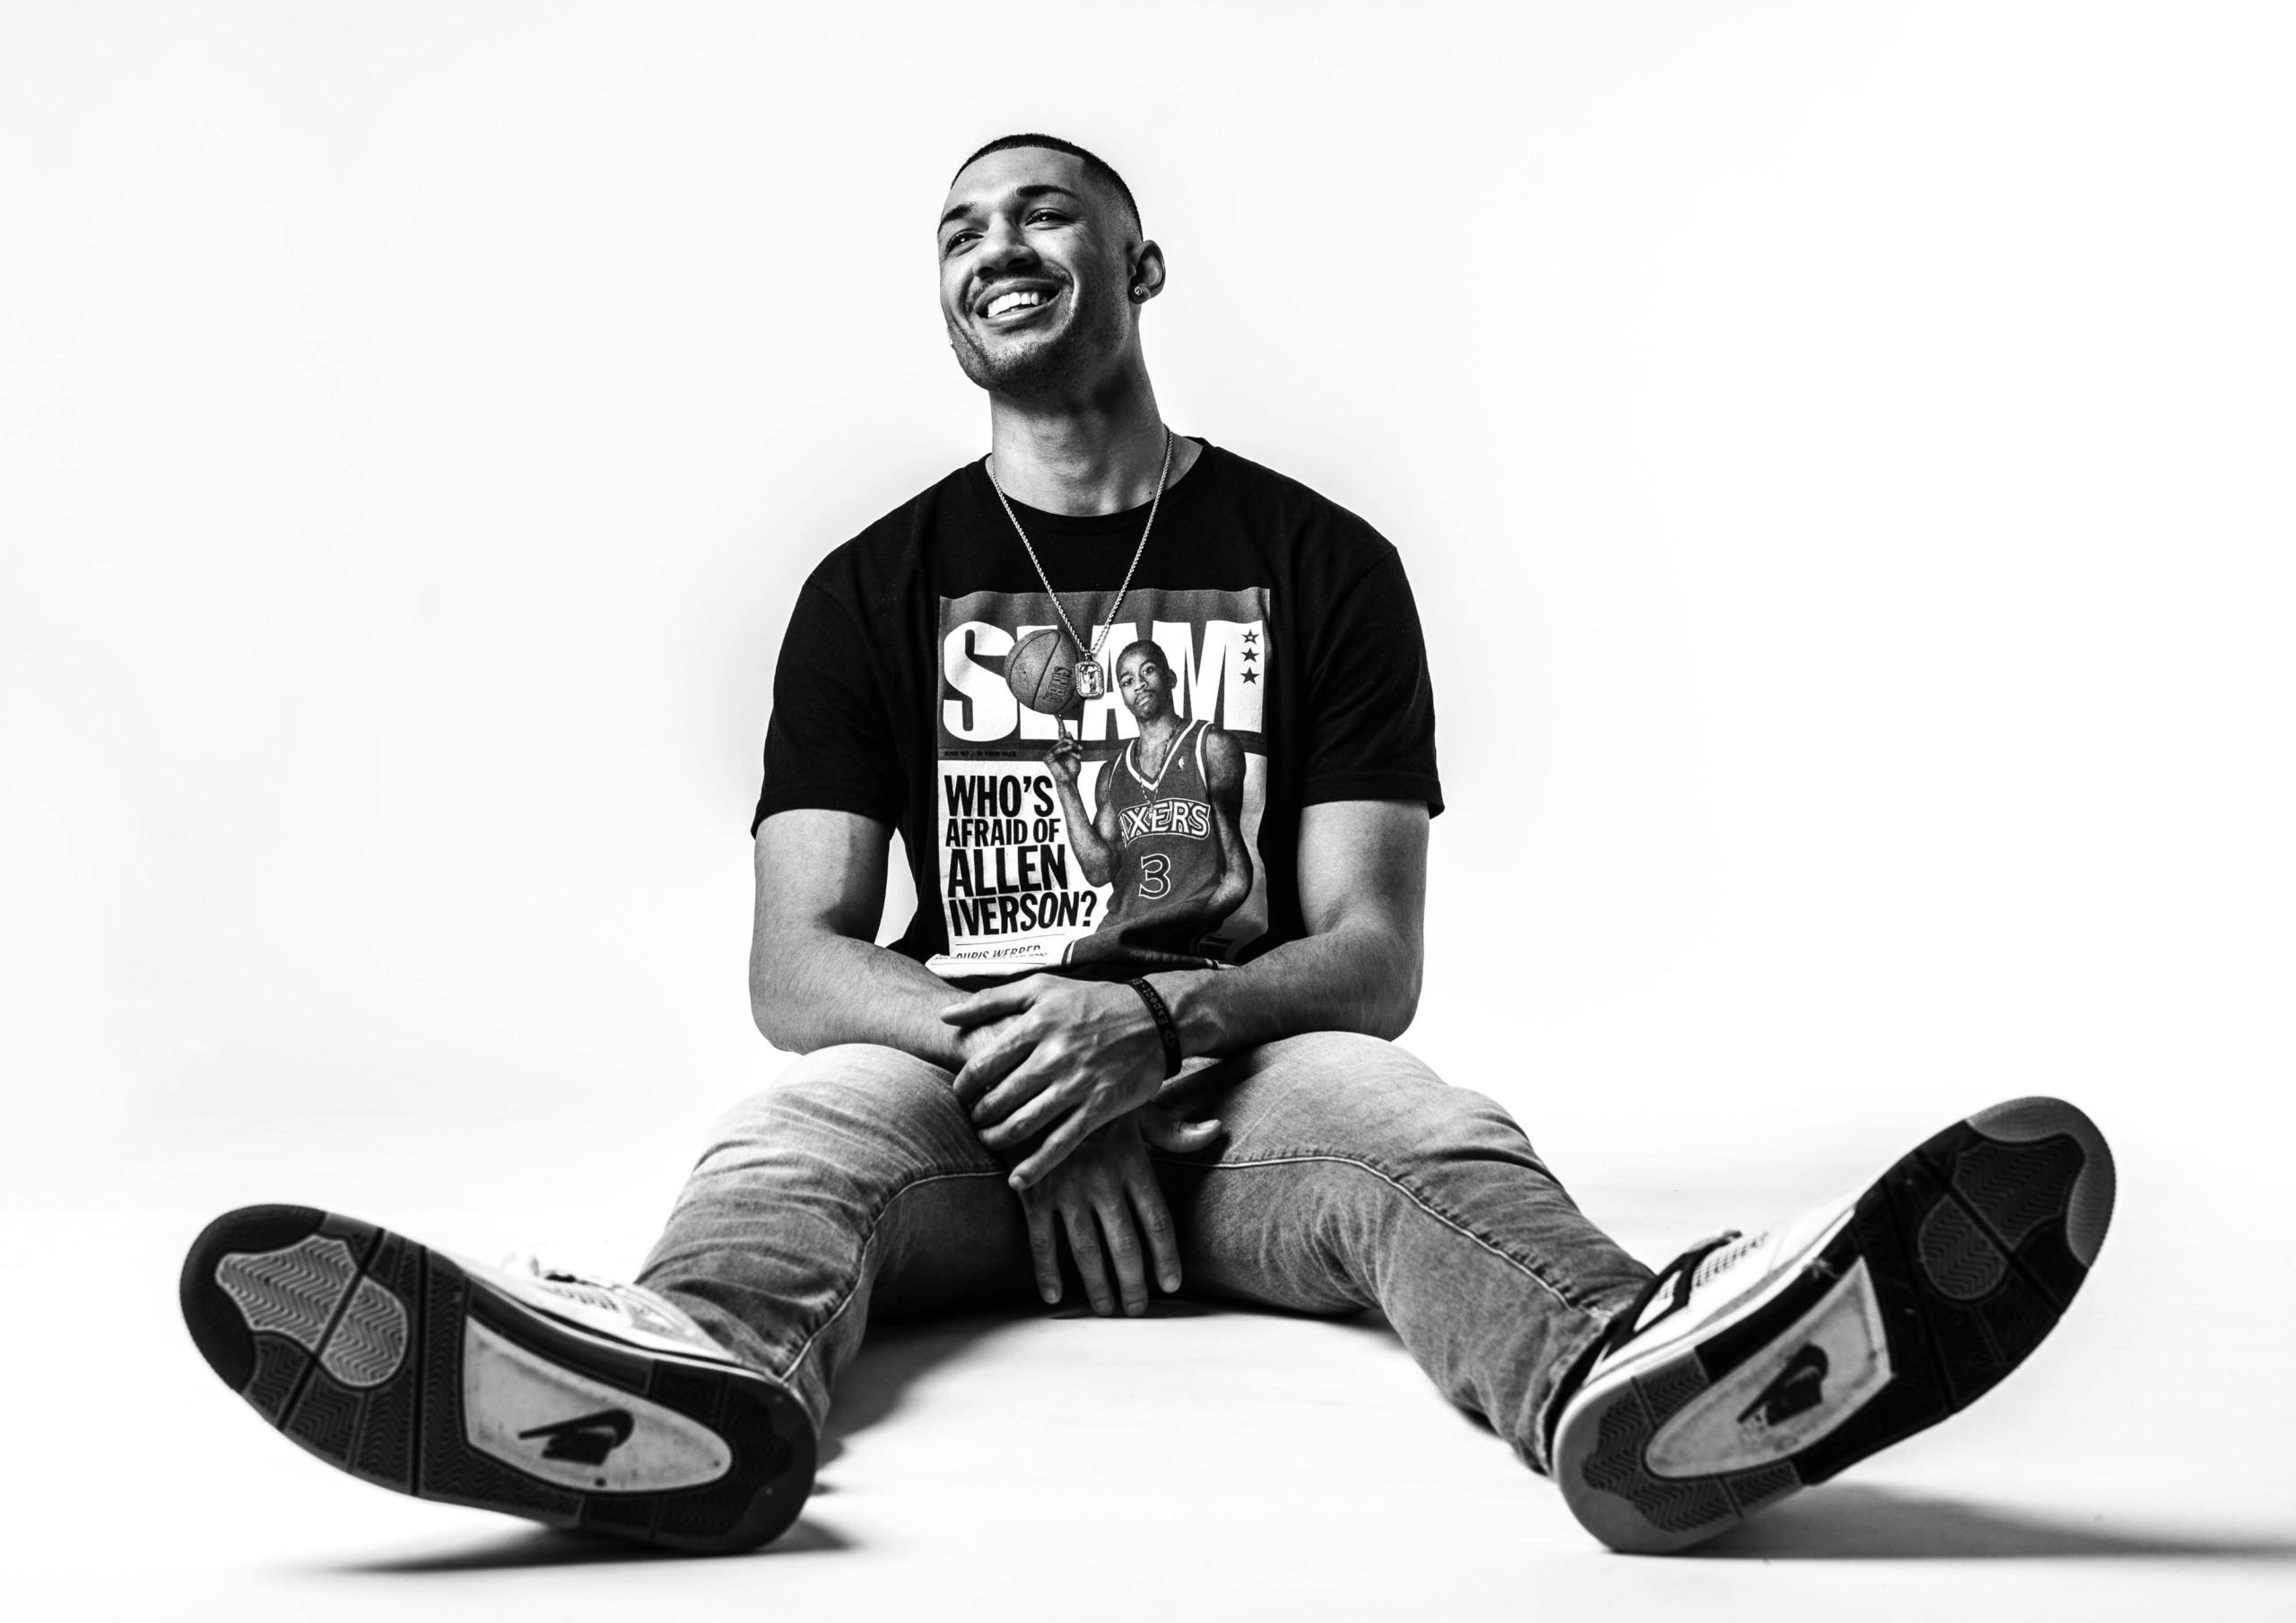 Svartvit porträttbild av en glad ung man i casual stil, poserande på golvet med korslagda ben, iförd en Allen Iverson t-shirt, för en artikel om porträttfotografering.